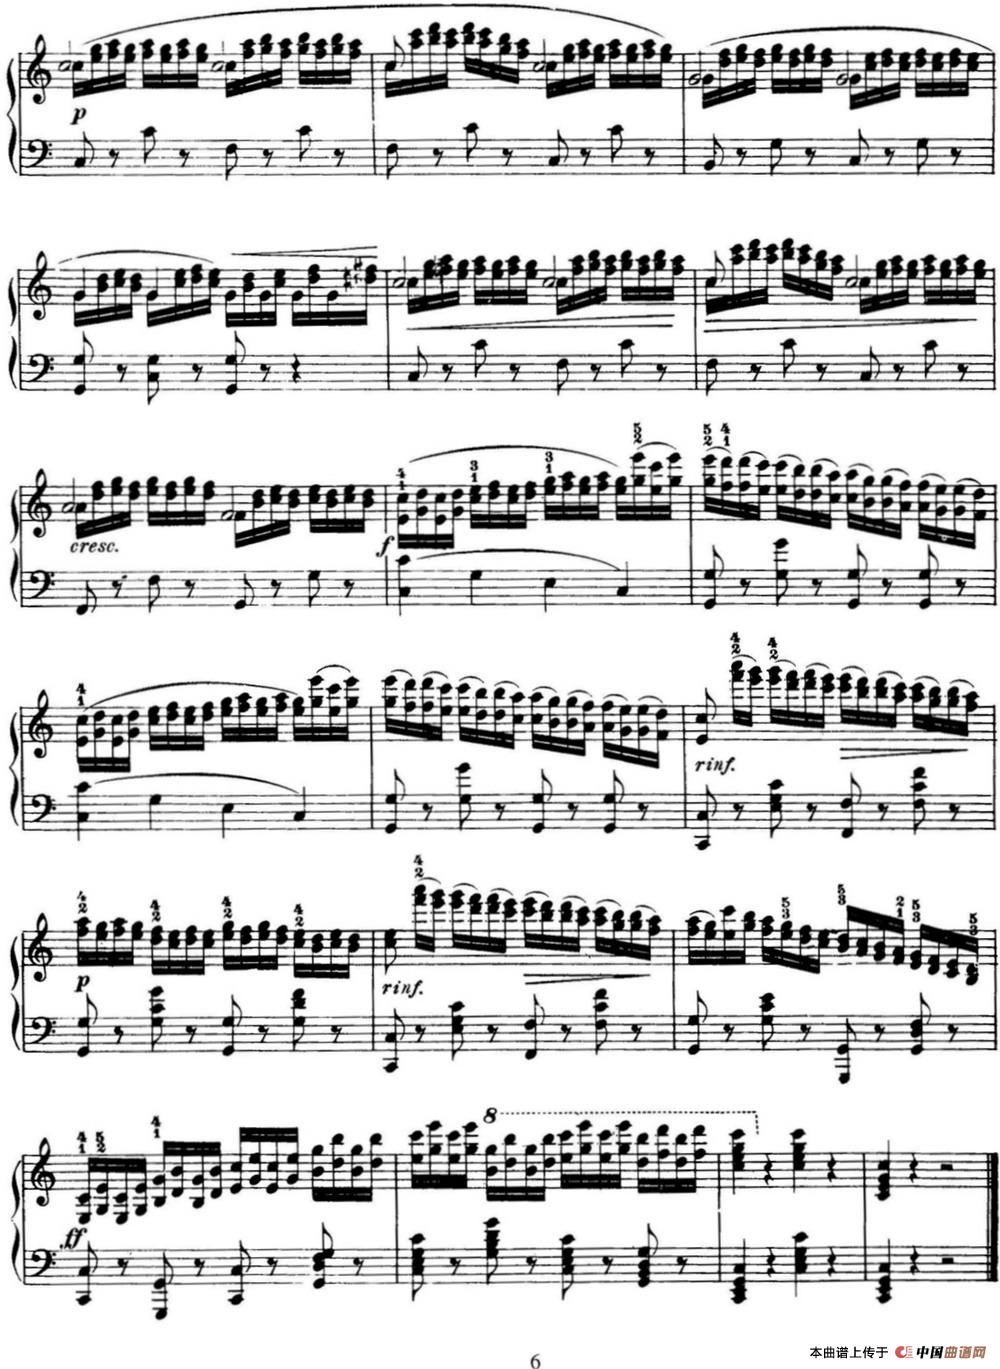 50首车尔尼Op.740钢琴手指灵巧技术练习曲（NO.34）(1)_-C740_页面_125.jpg